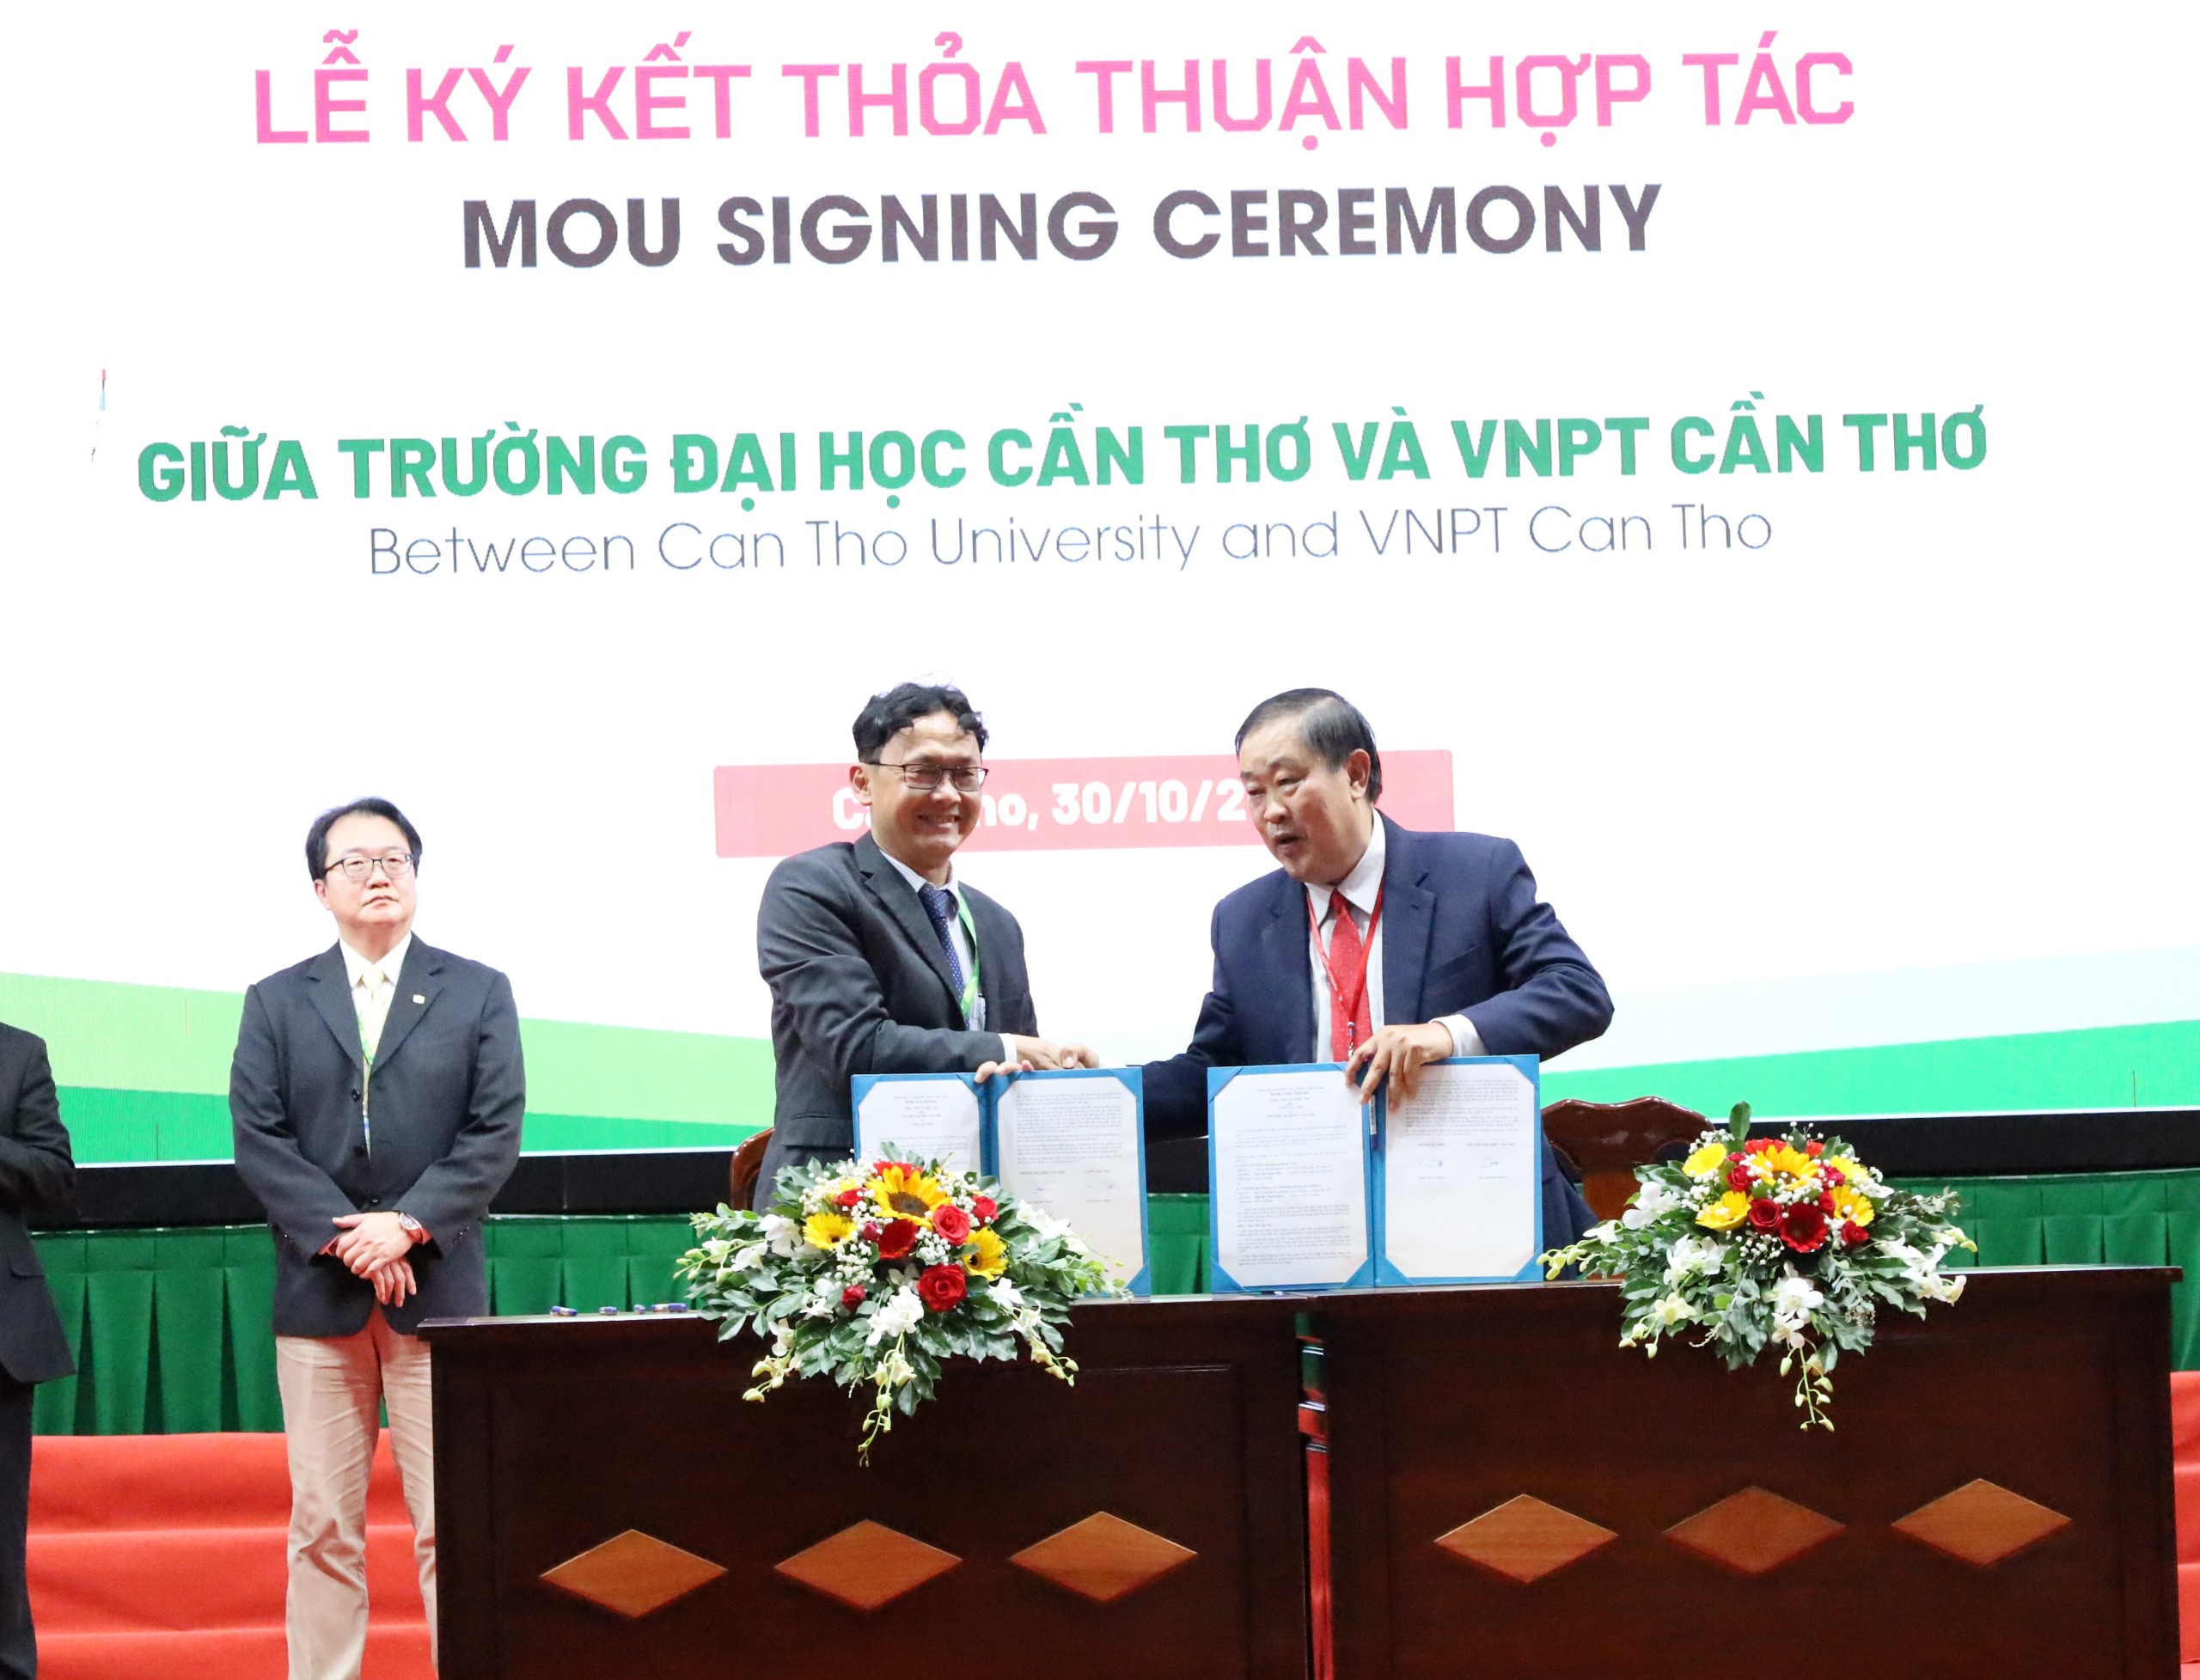 Ký kết thỏa thuận hợp tác giữa Trường Đại học Cần Thơ và VNPT Cần Thơ.